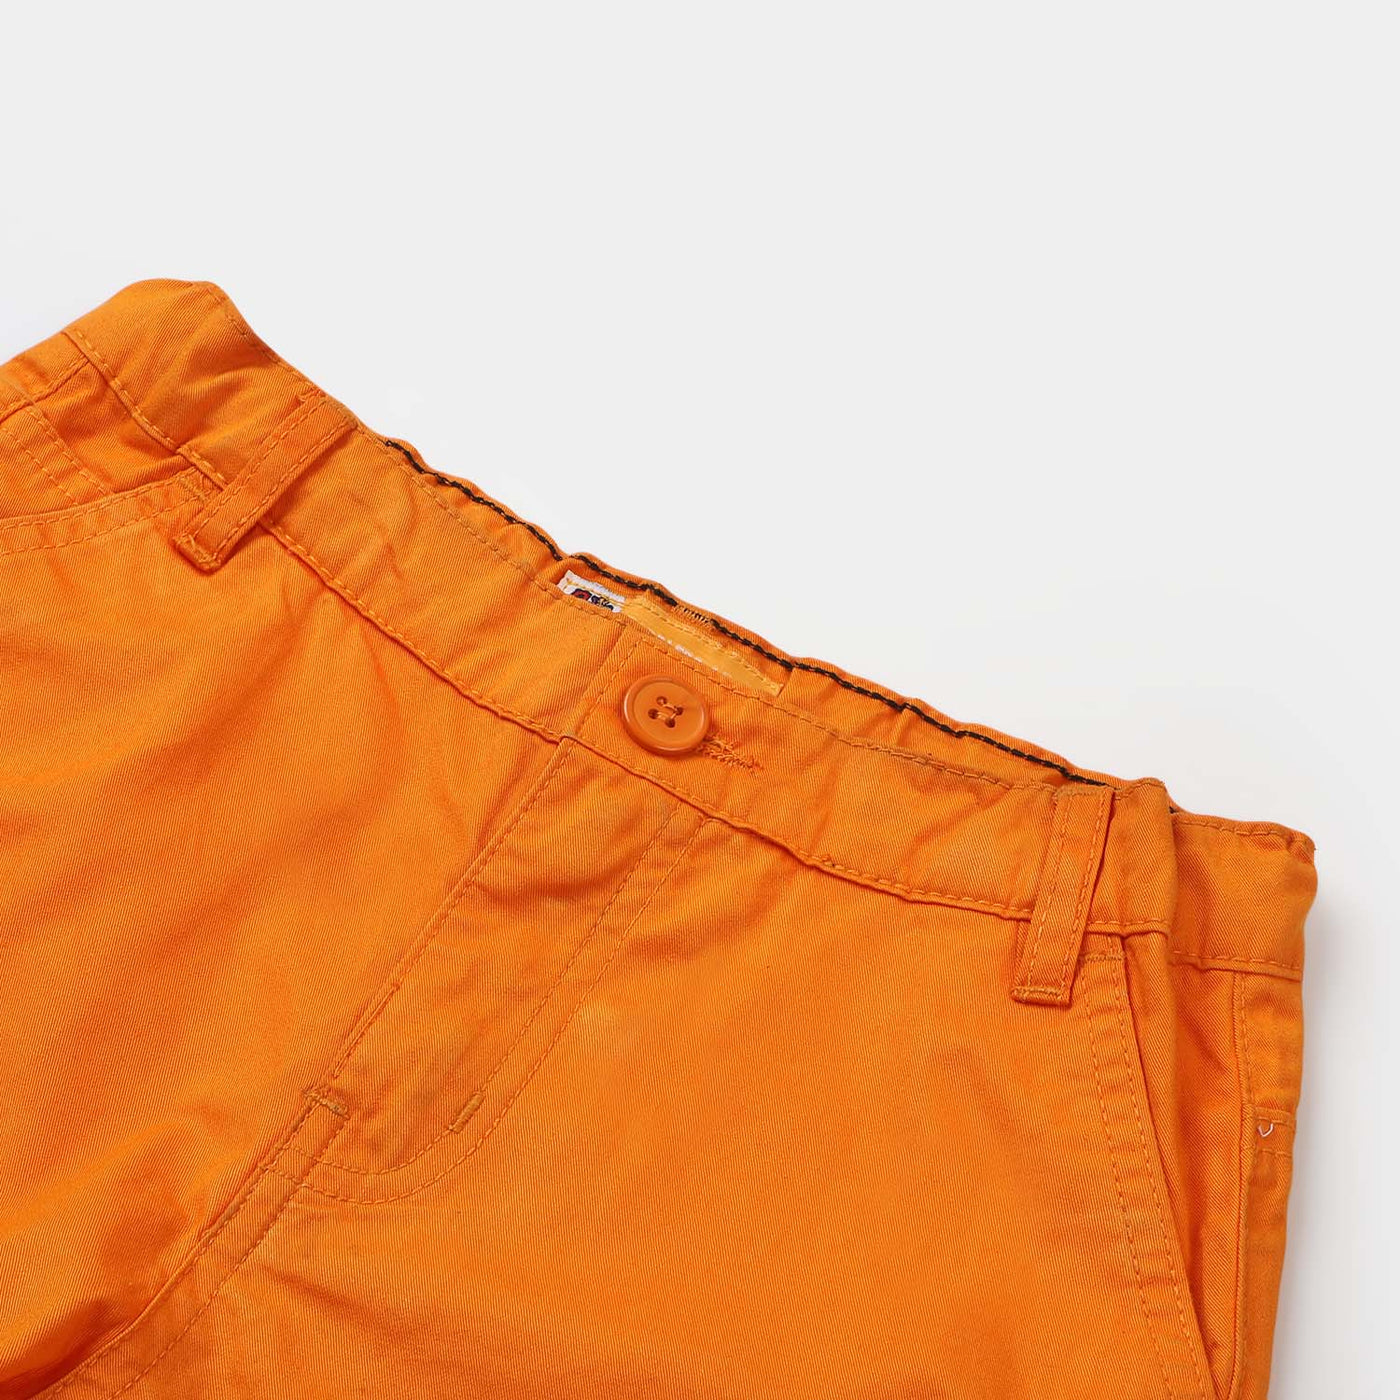 Boys Cotton Short Basic - Orange